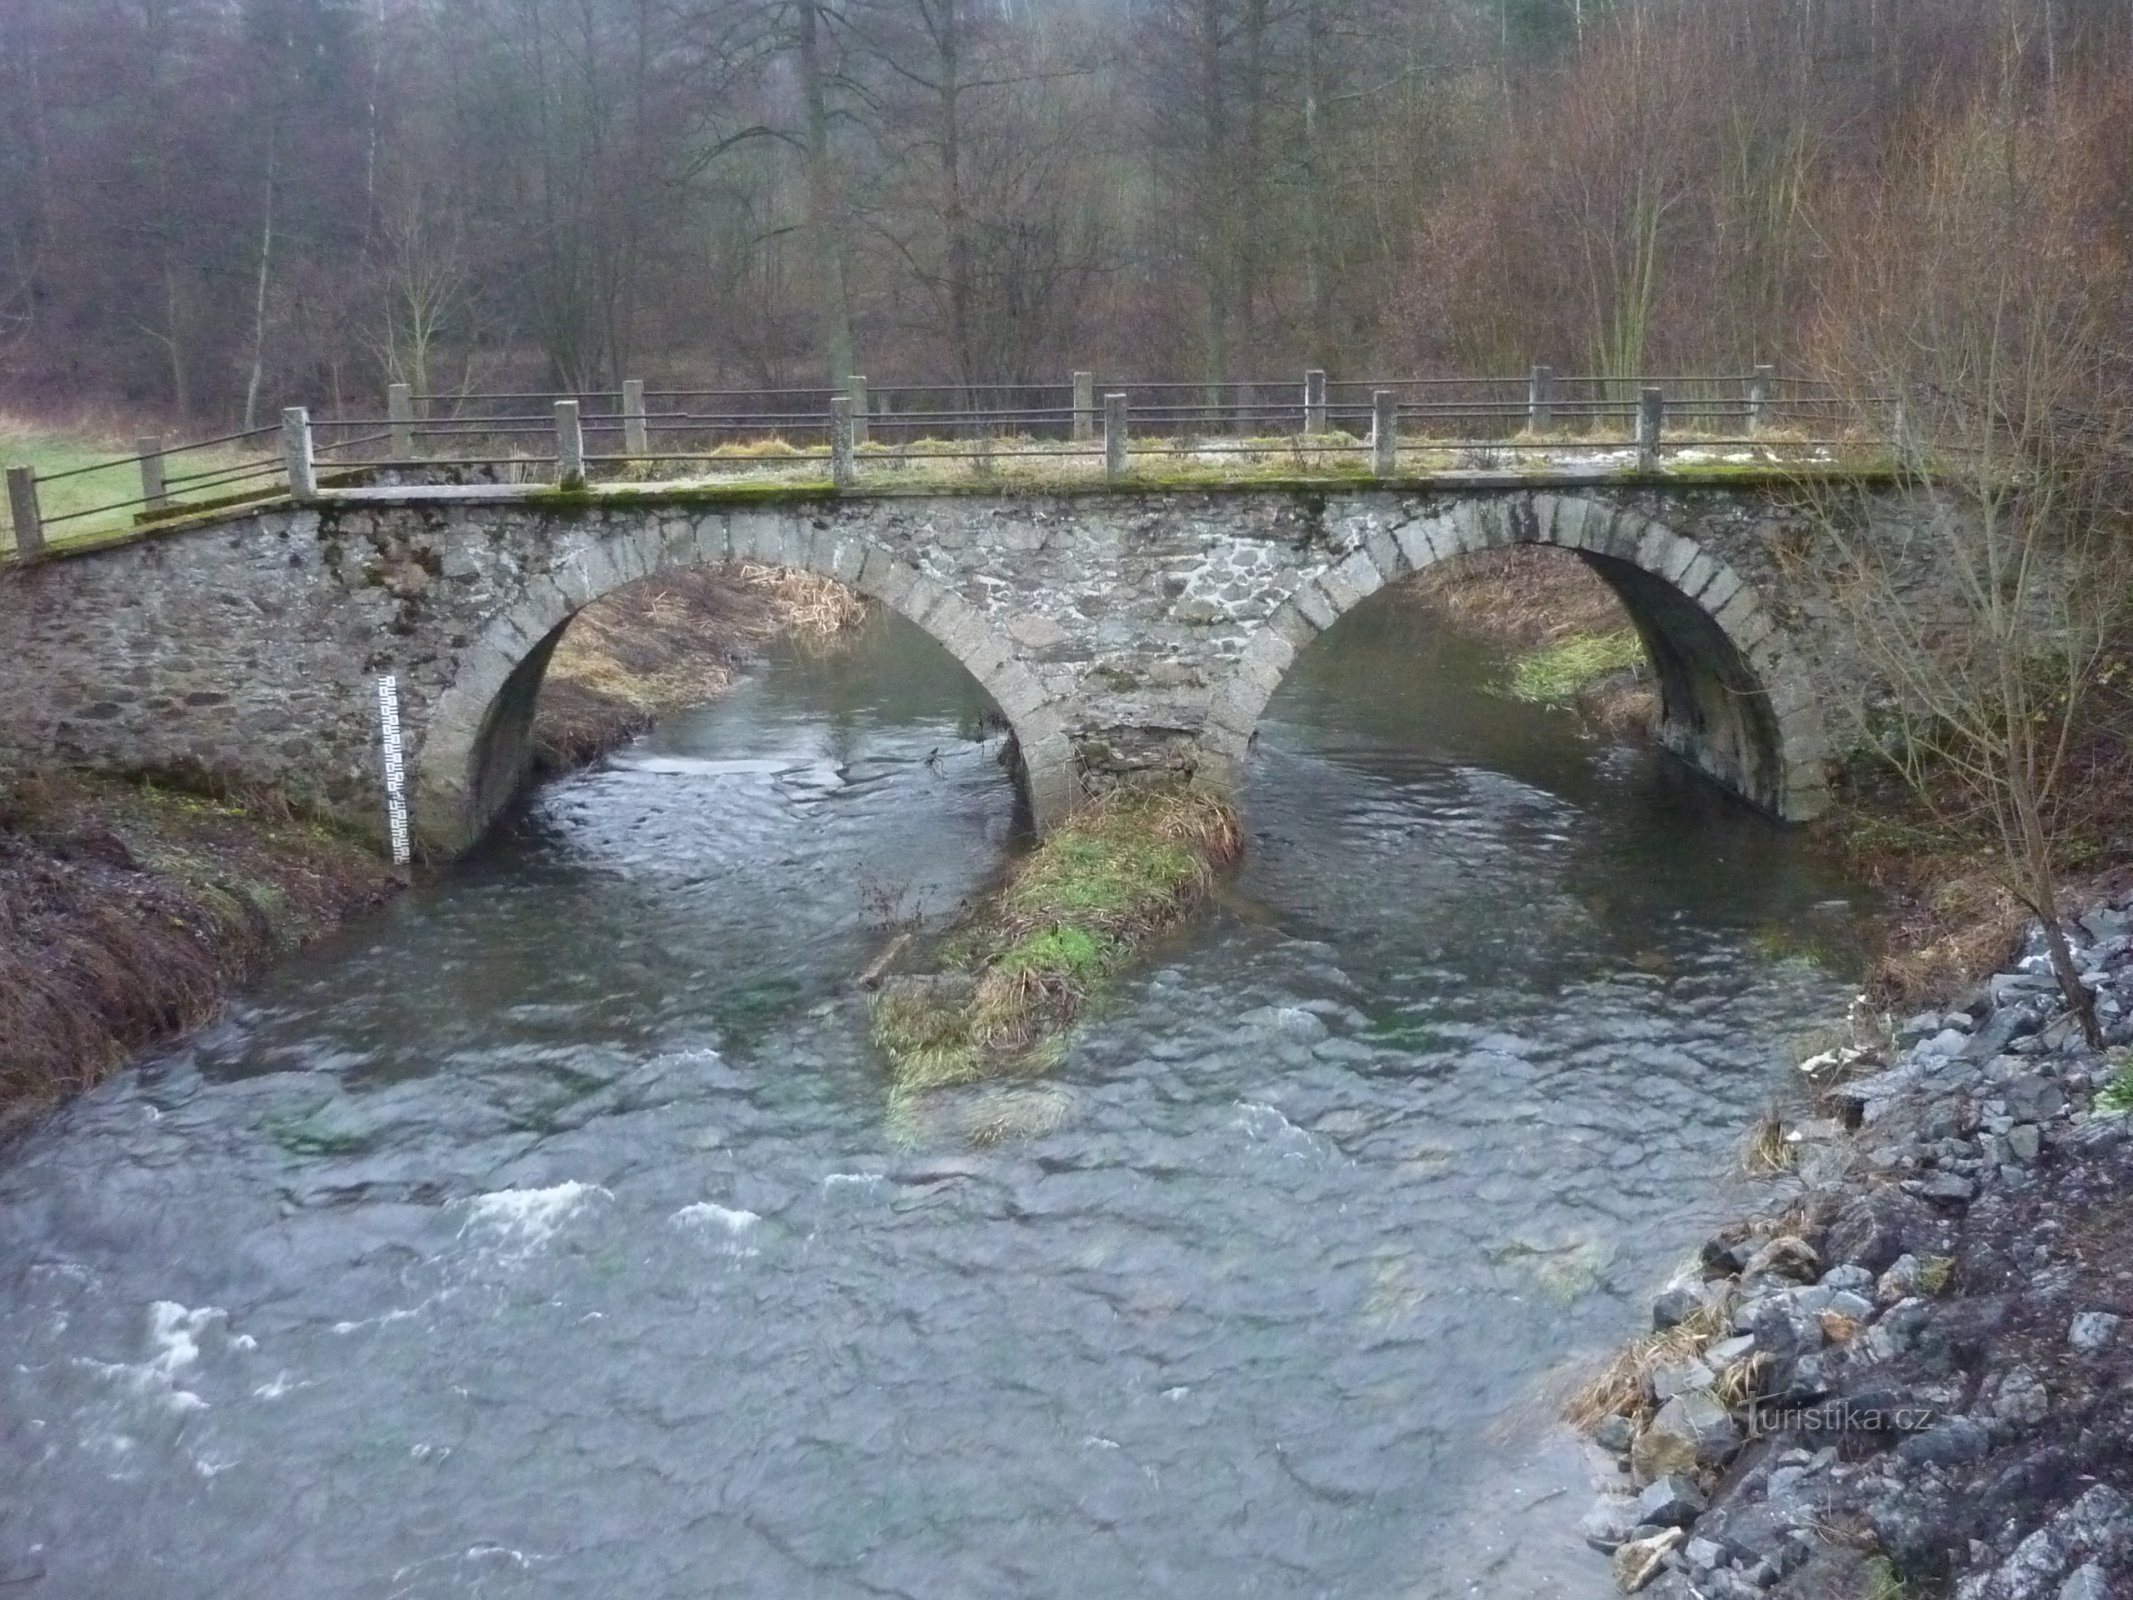 Pod istoric de piatră peste râul Sázava